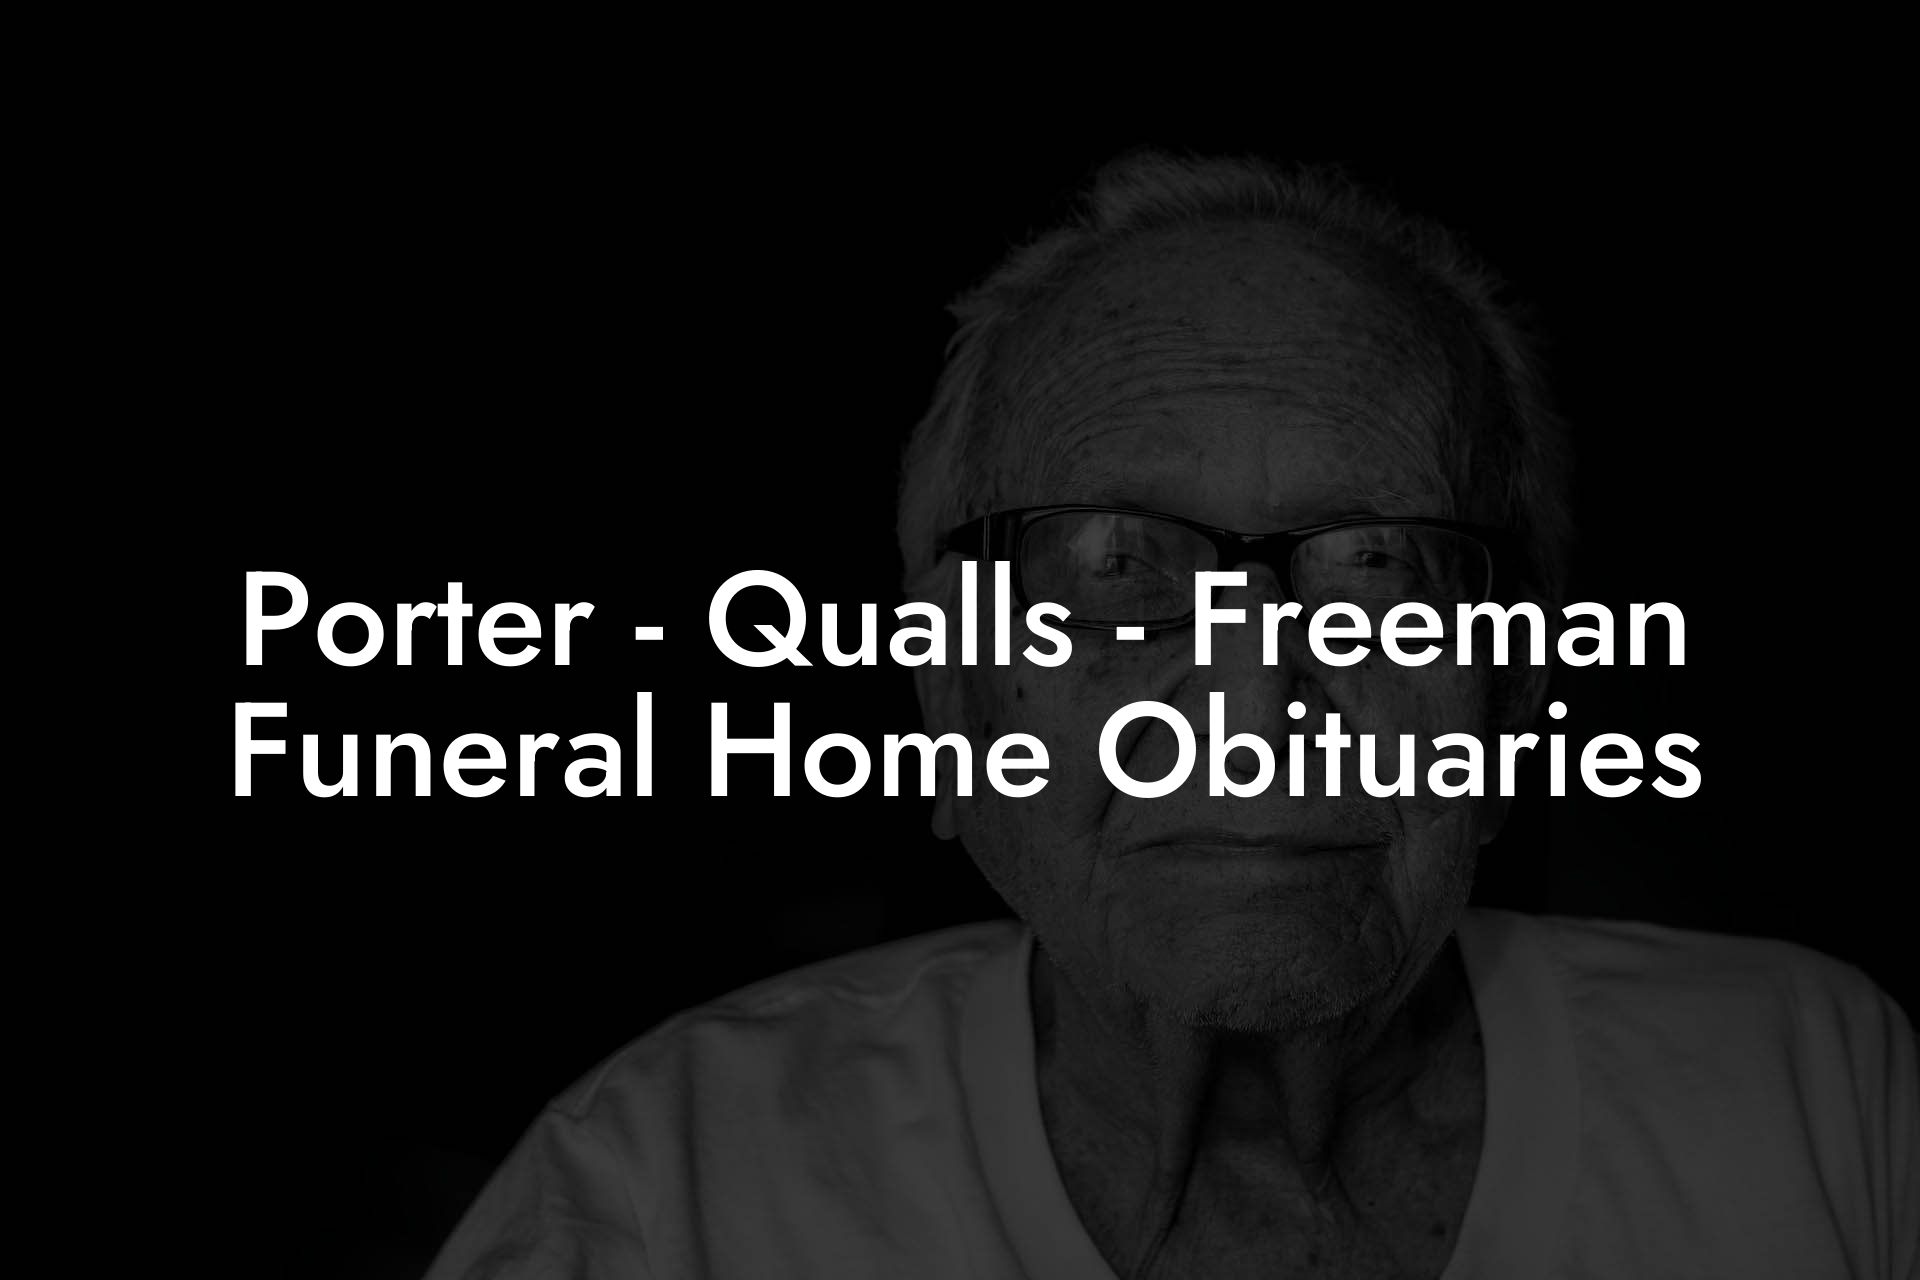 Porter - Qualls - Freeman Funeral Home Obituaries